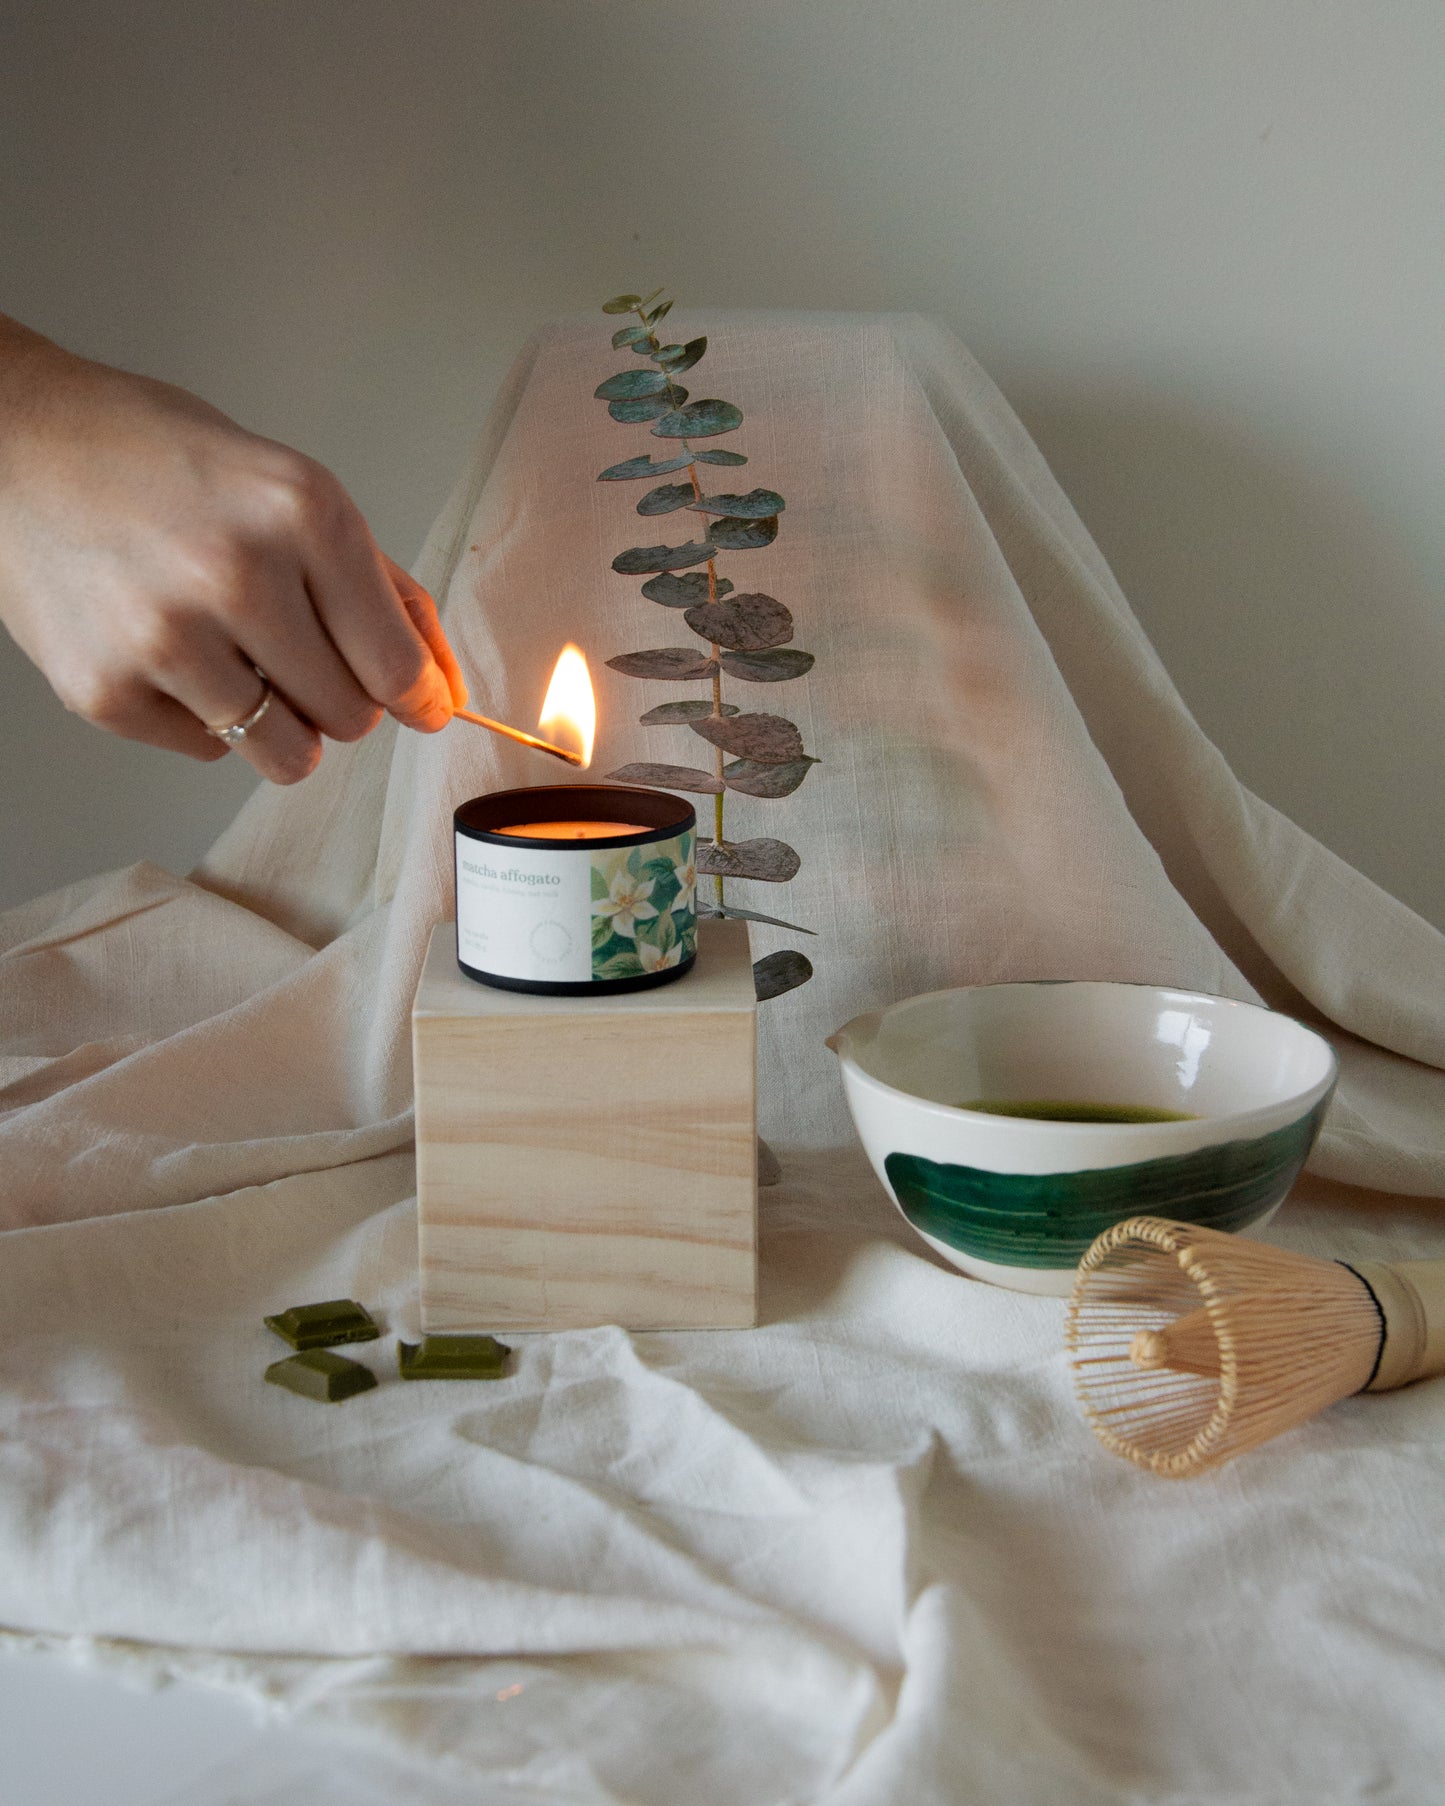 Winter Tea Garden (Candle Gift Set)